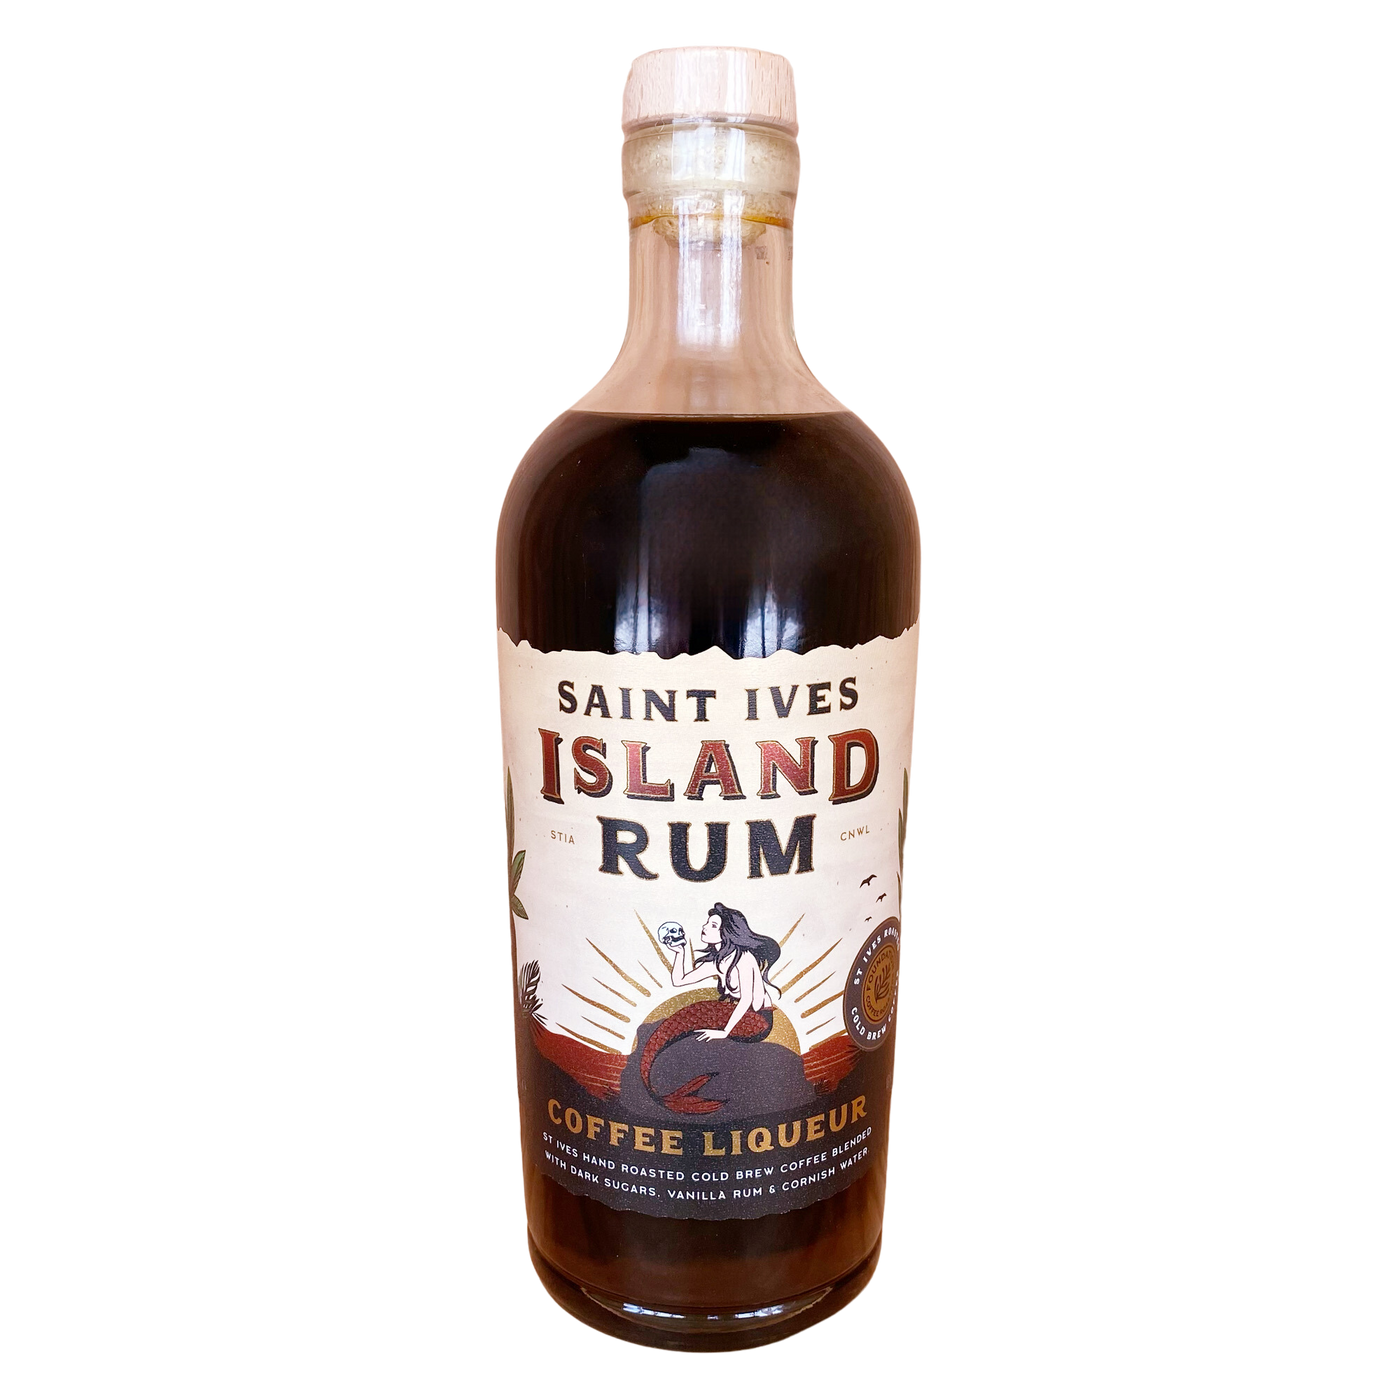 Saint Ives Island Rum Coffee Liqueur